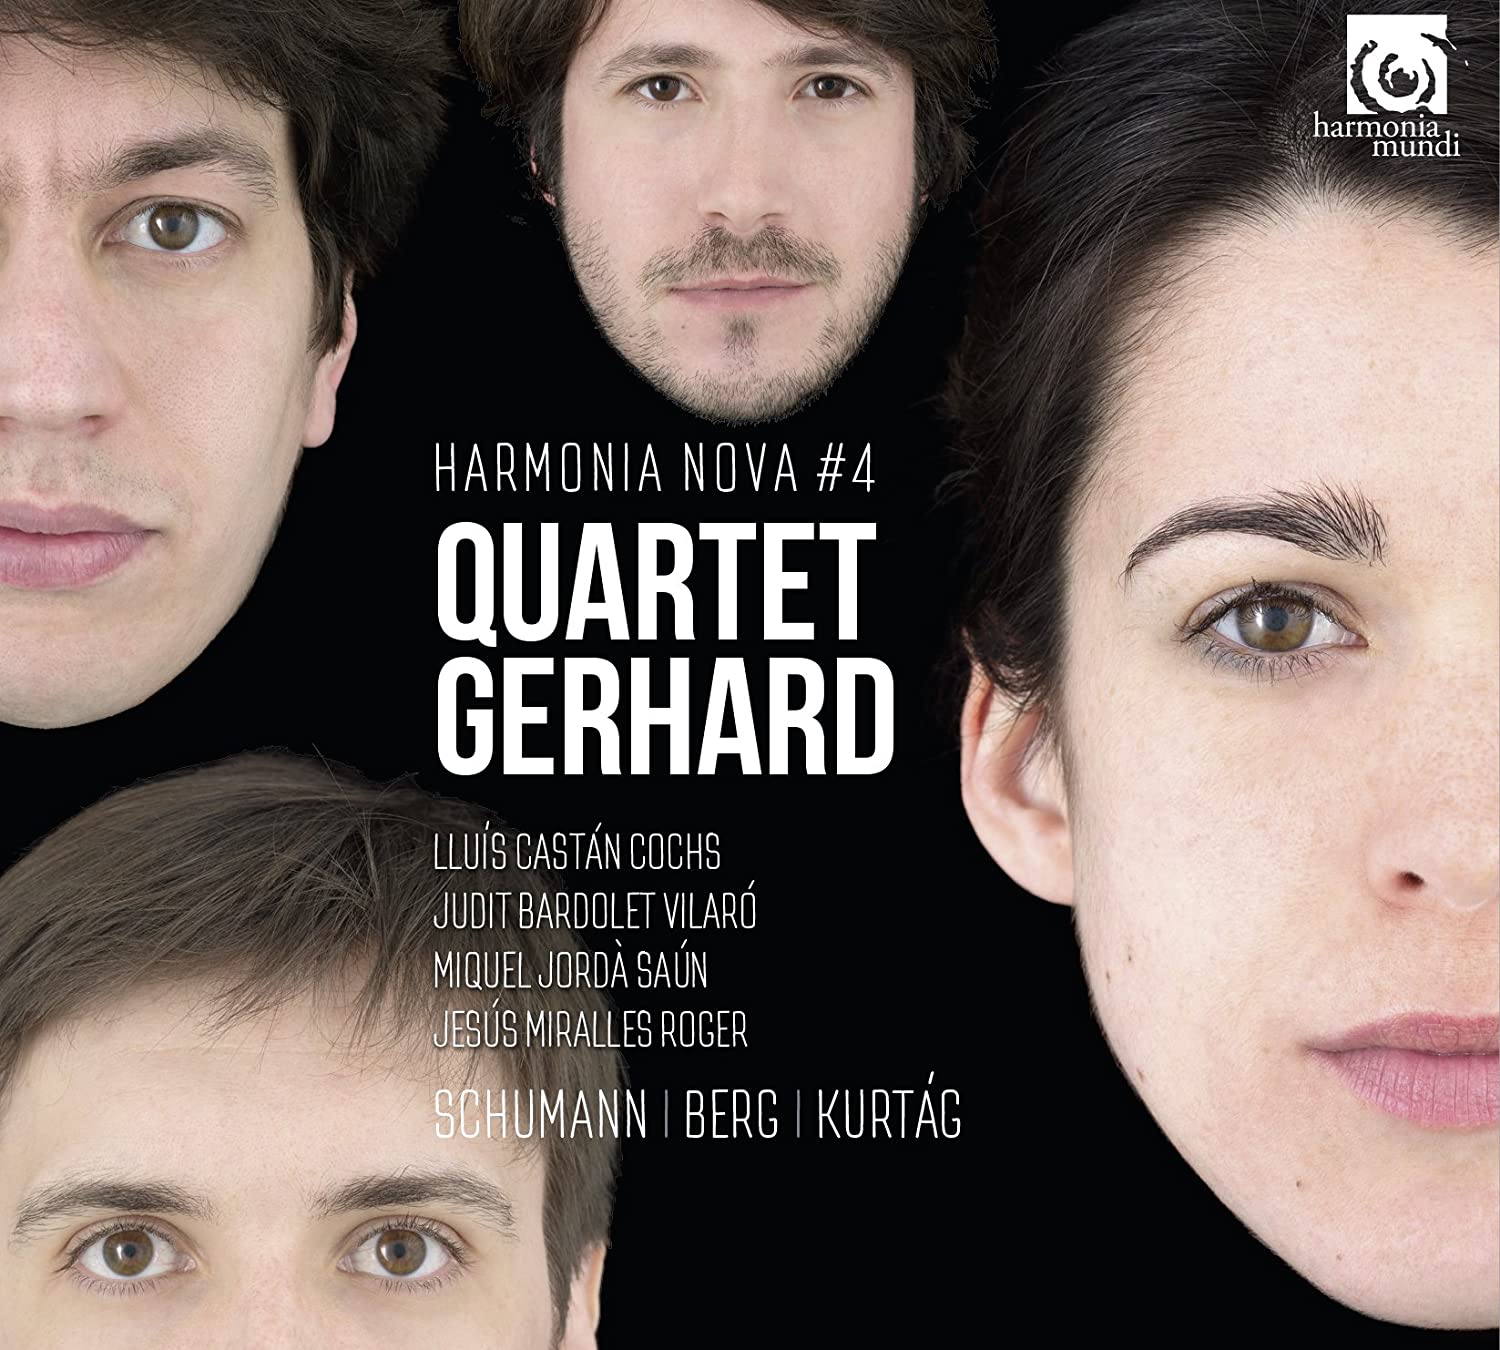 Quartet Gerhard: Schumann/Berg/Kurtág | Quartet Gerhard